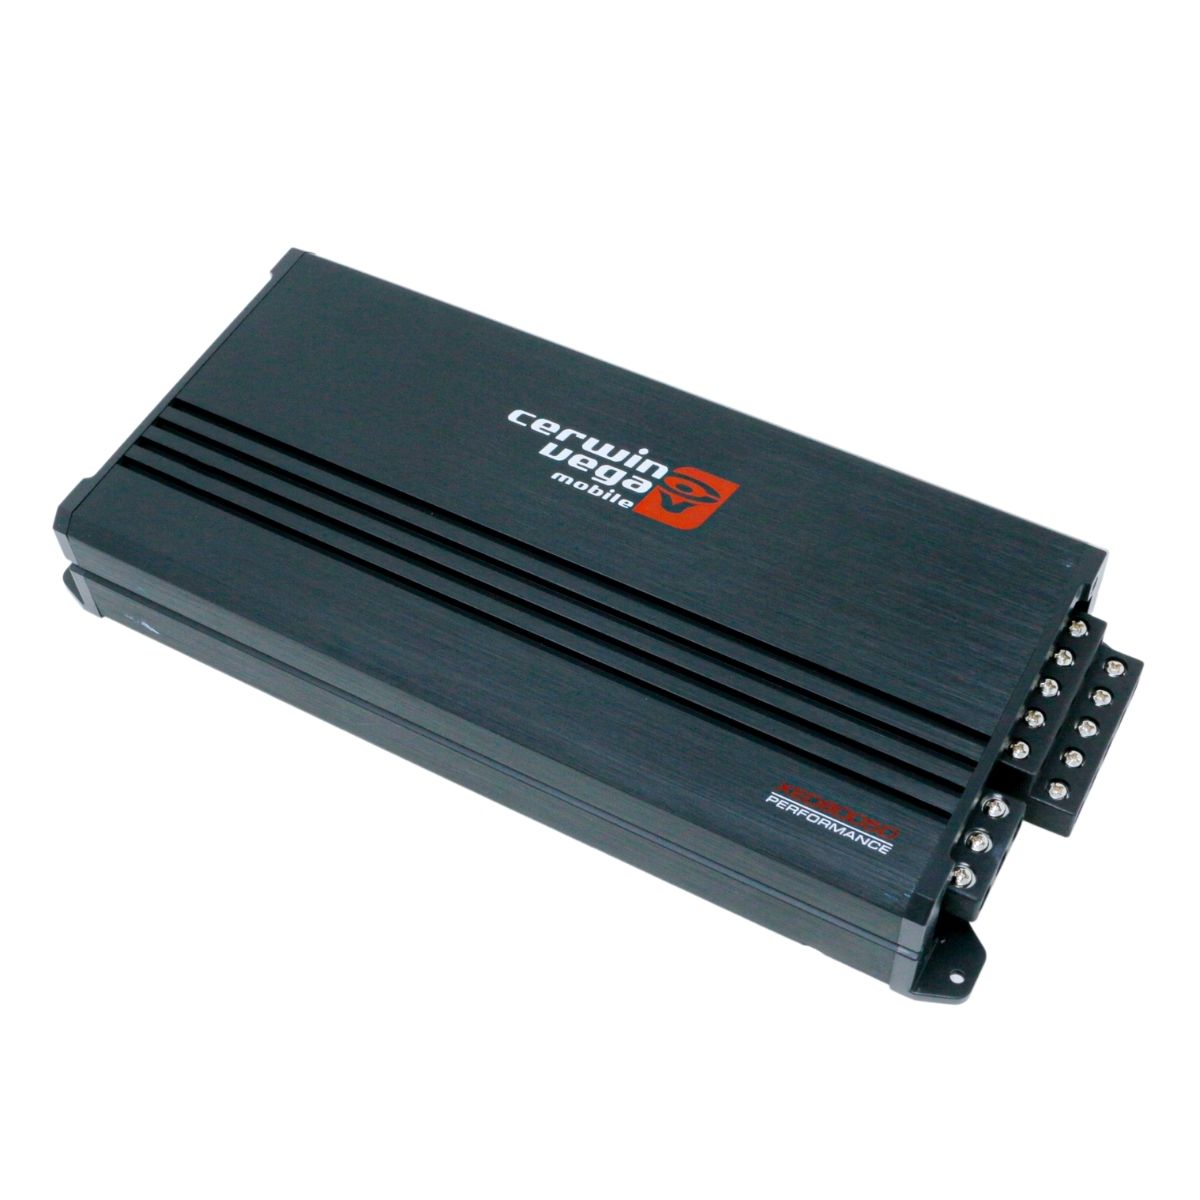 Cerwin Vega XED8005D 660W RMS 5 Channel Amplifier